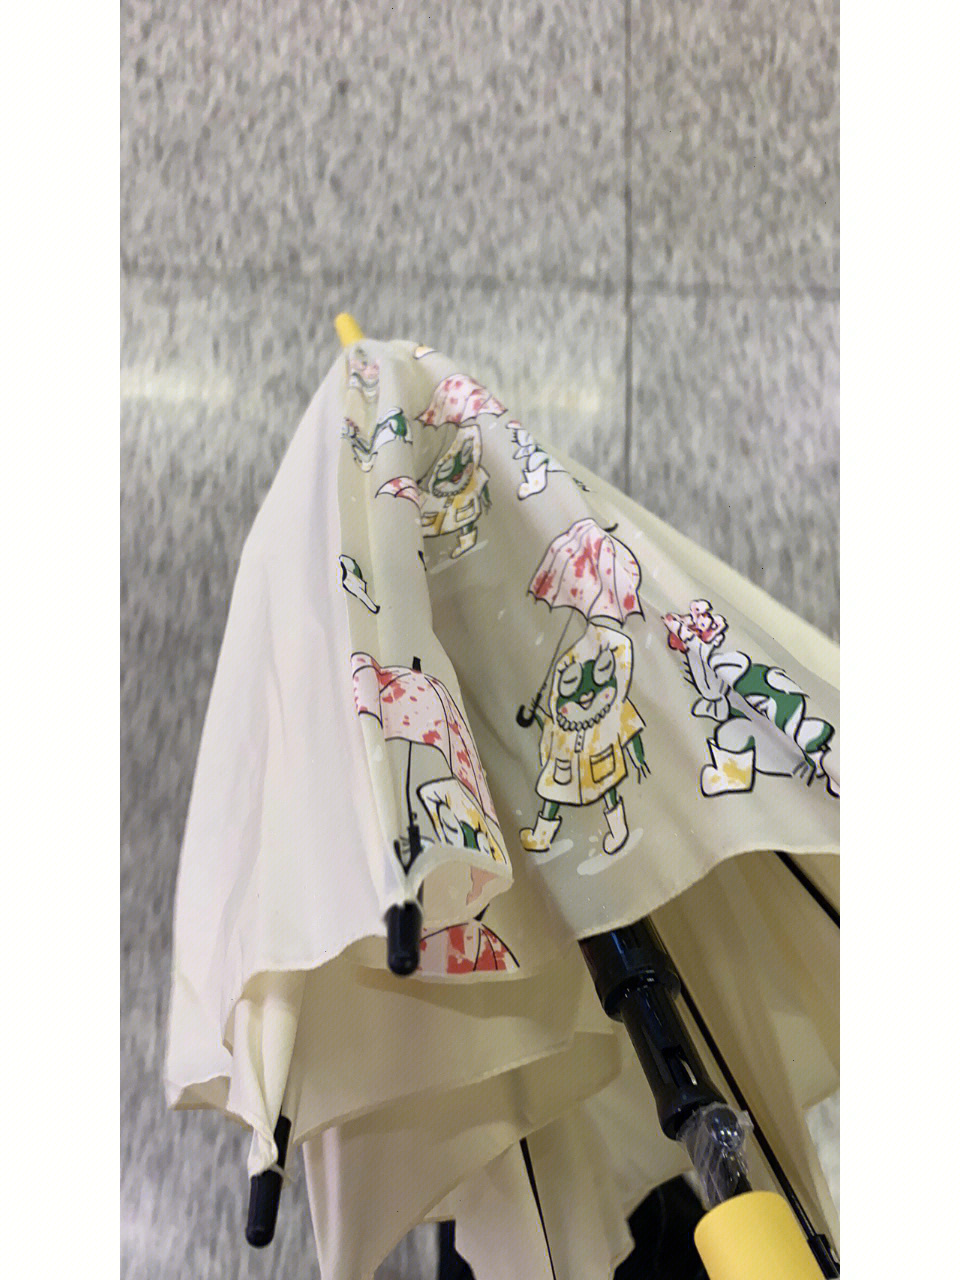 今天武汉下雨了,买奶茶的时候看到一个小姐姐拿着一把茶颜的变色伞,还